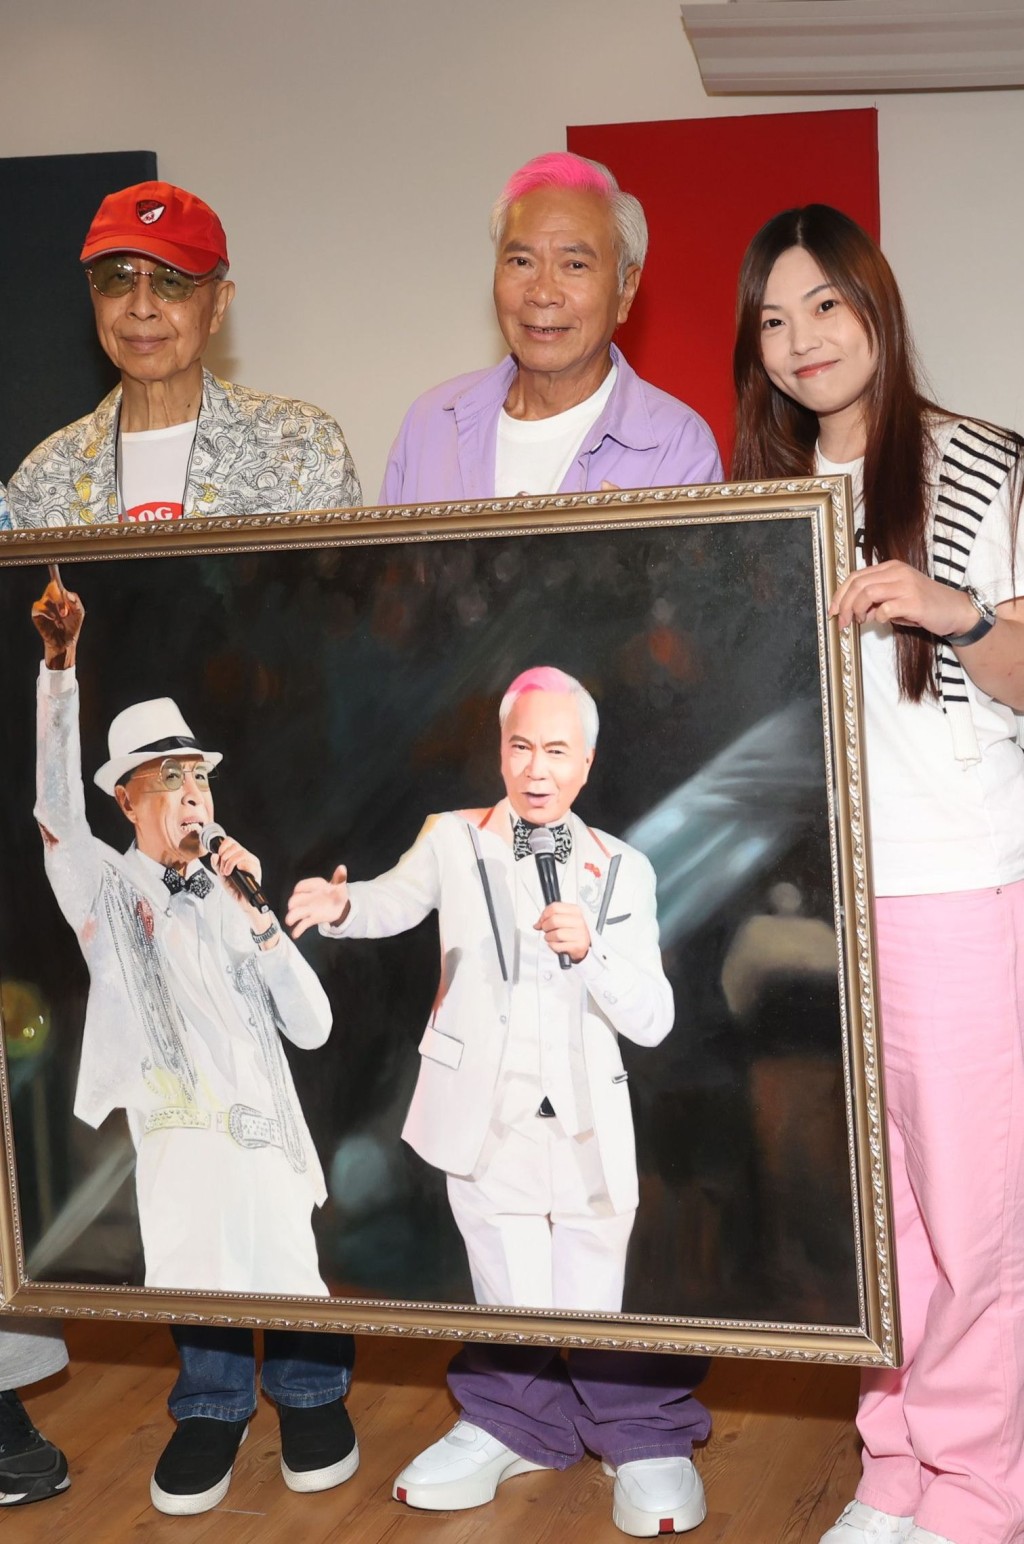 去年7月Chris送人像油畫賀老公及葉振棠做《雙生双識演唱會》。